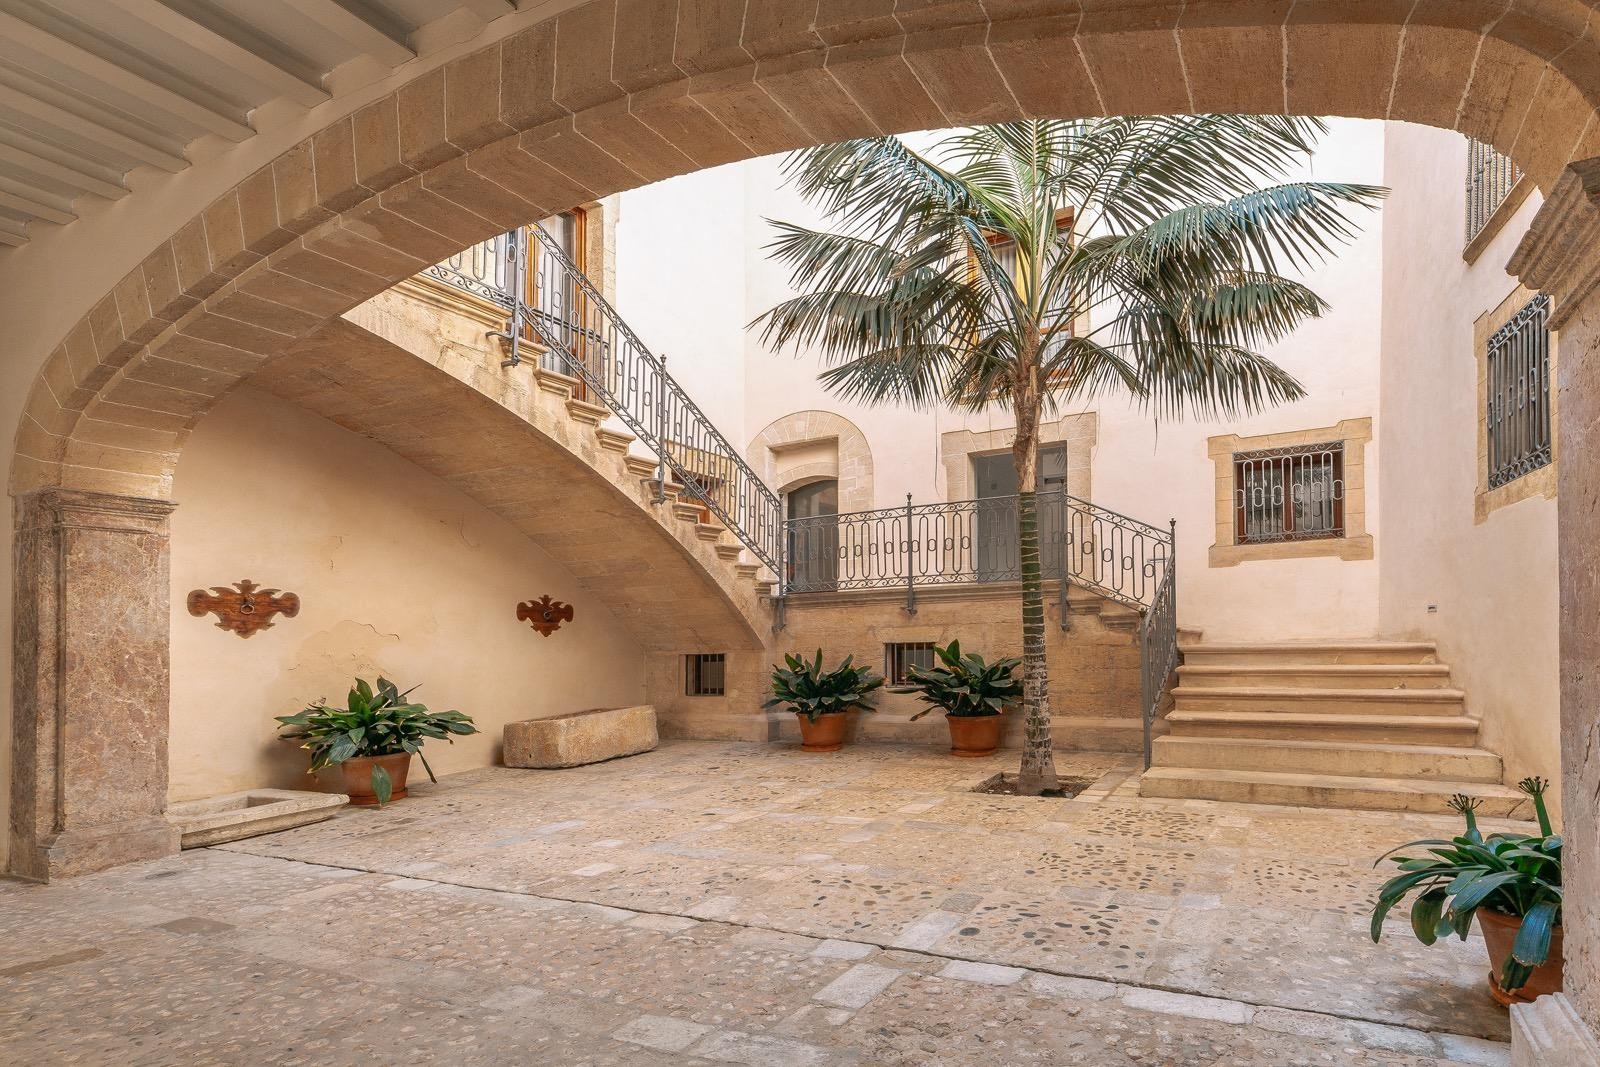 Großes Designer-Duplex mit Terrasse und Swimmingpool in Palmas spektakulärem historischen Zentrum